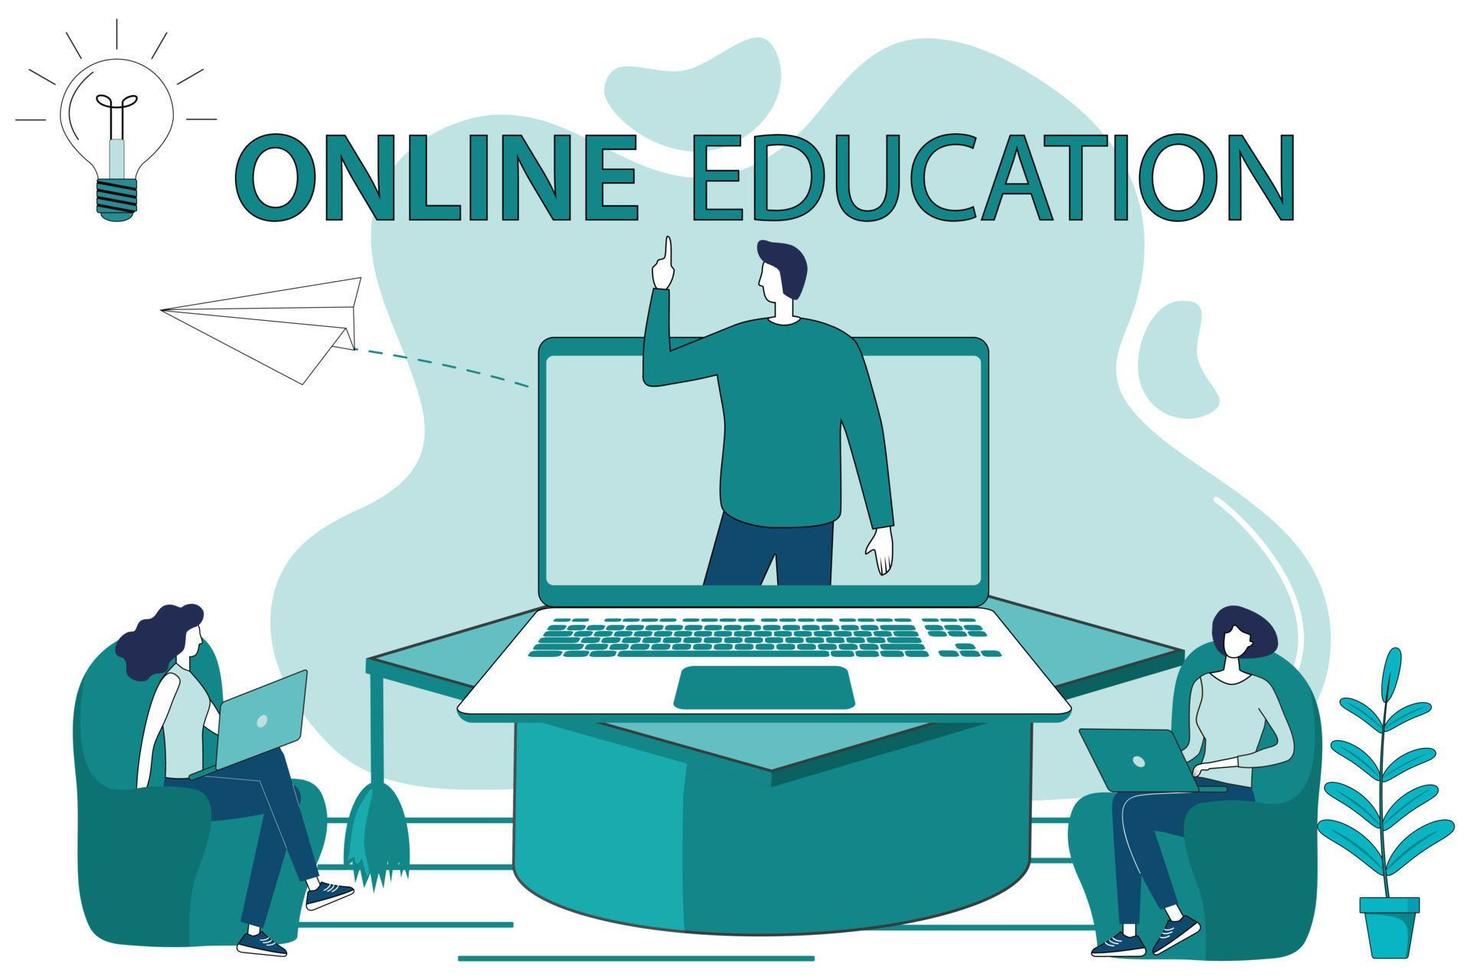 éducation en ligne.le concept d'obtenir une éducation par le biais d'une vidéoconférence.cours de formation avancée en ligne.les gens utilisent un ordinateur portable et une connexion en ligne pour obtenir une éducation. vecteur